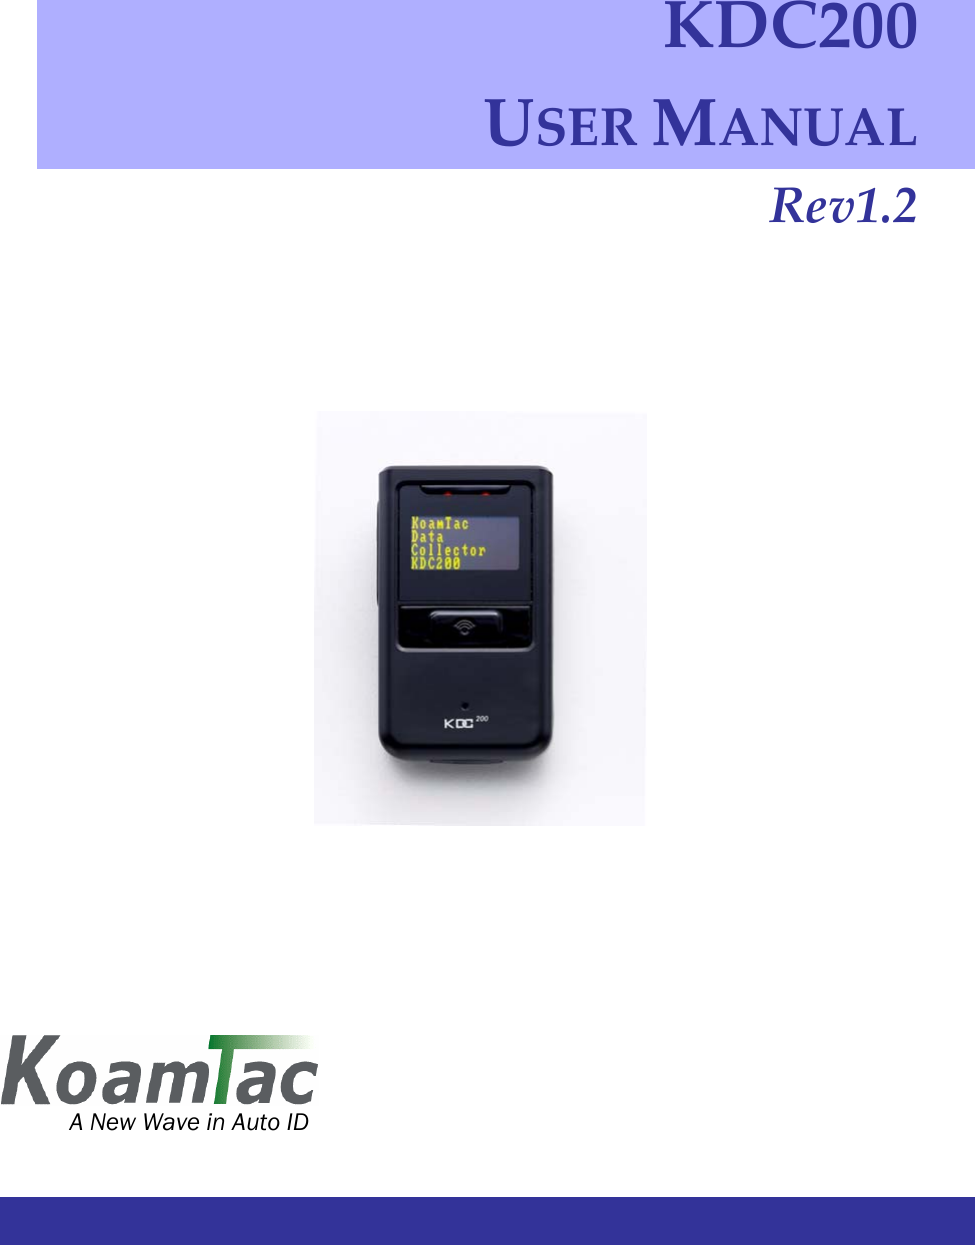                  KDC200USERMANUALRev1.2 A New Wave in Auto ID 